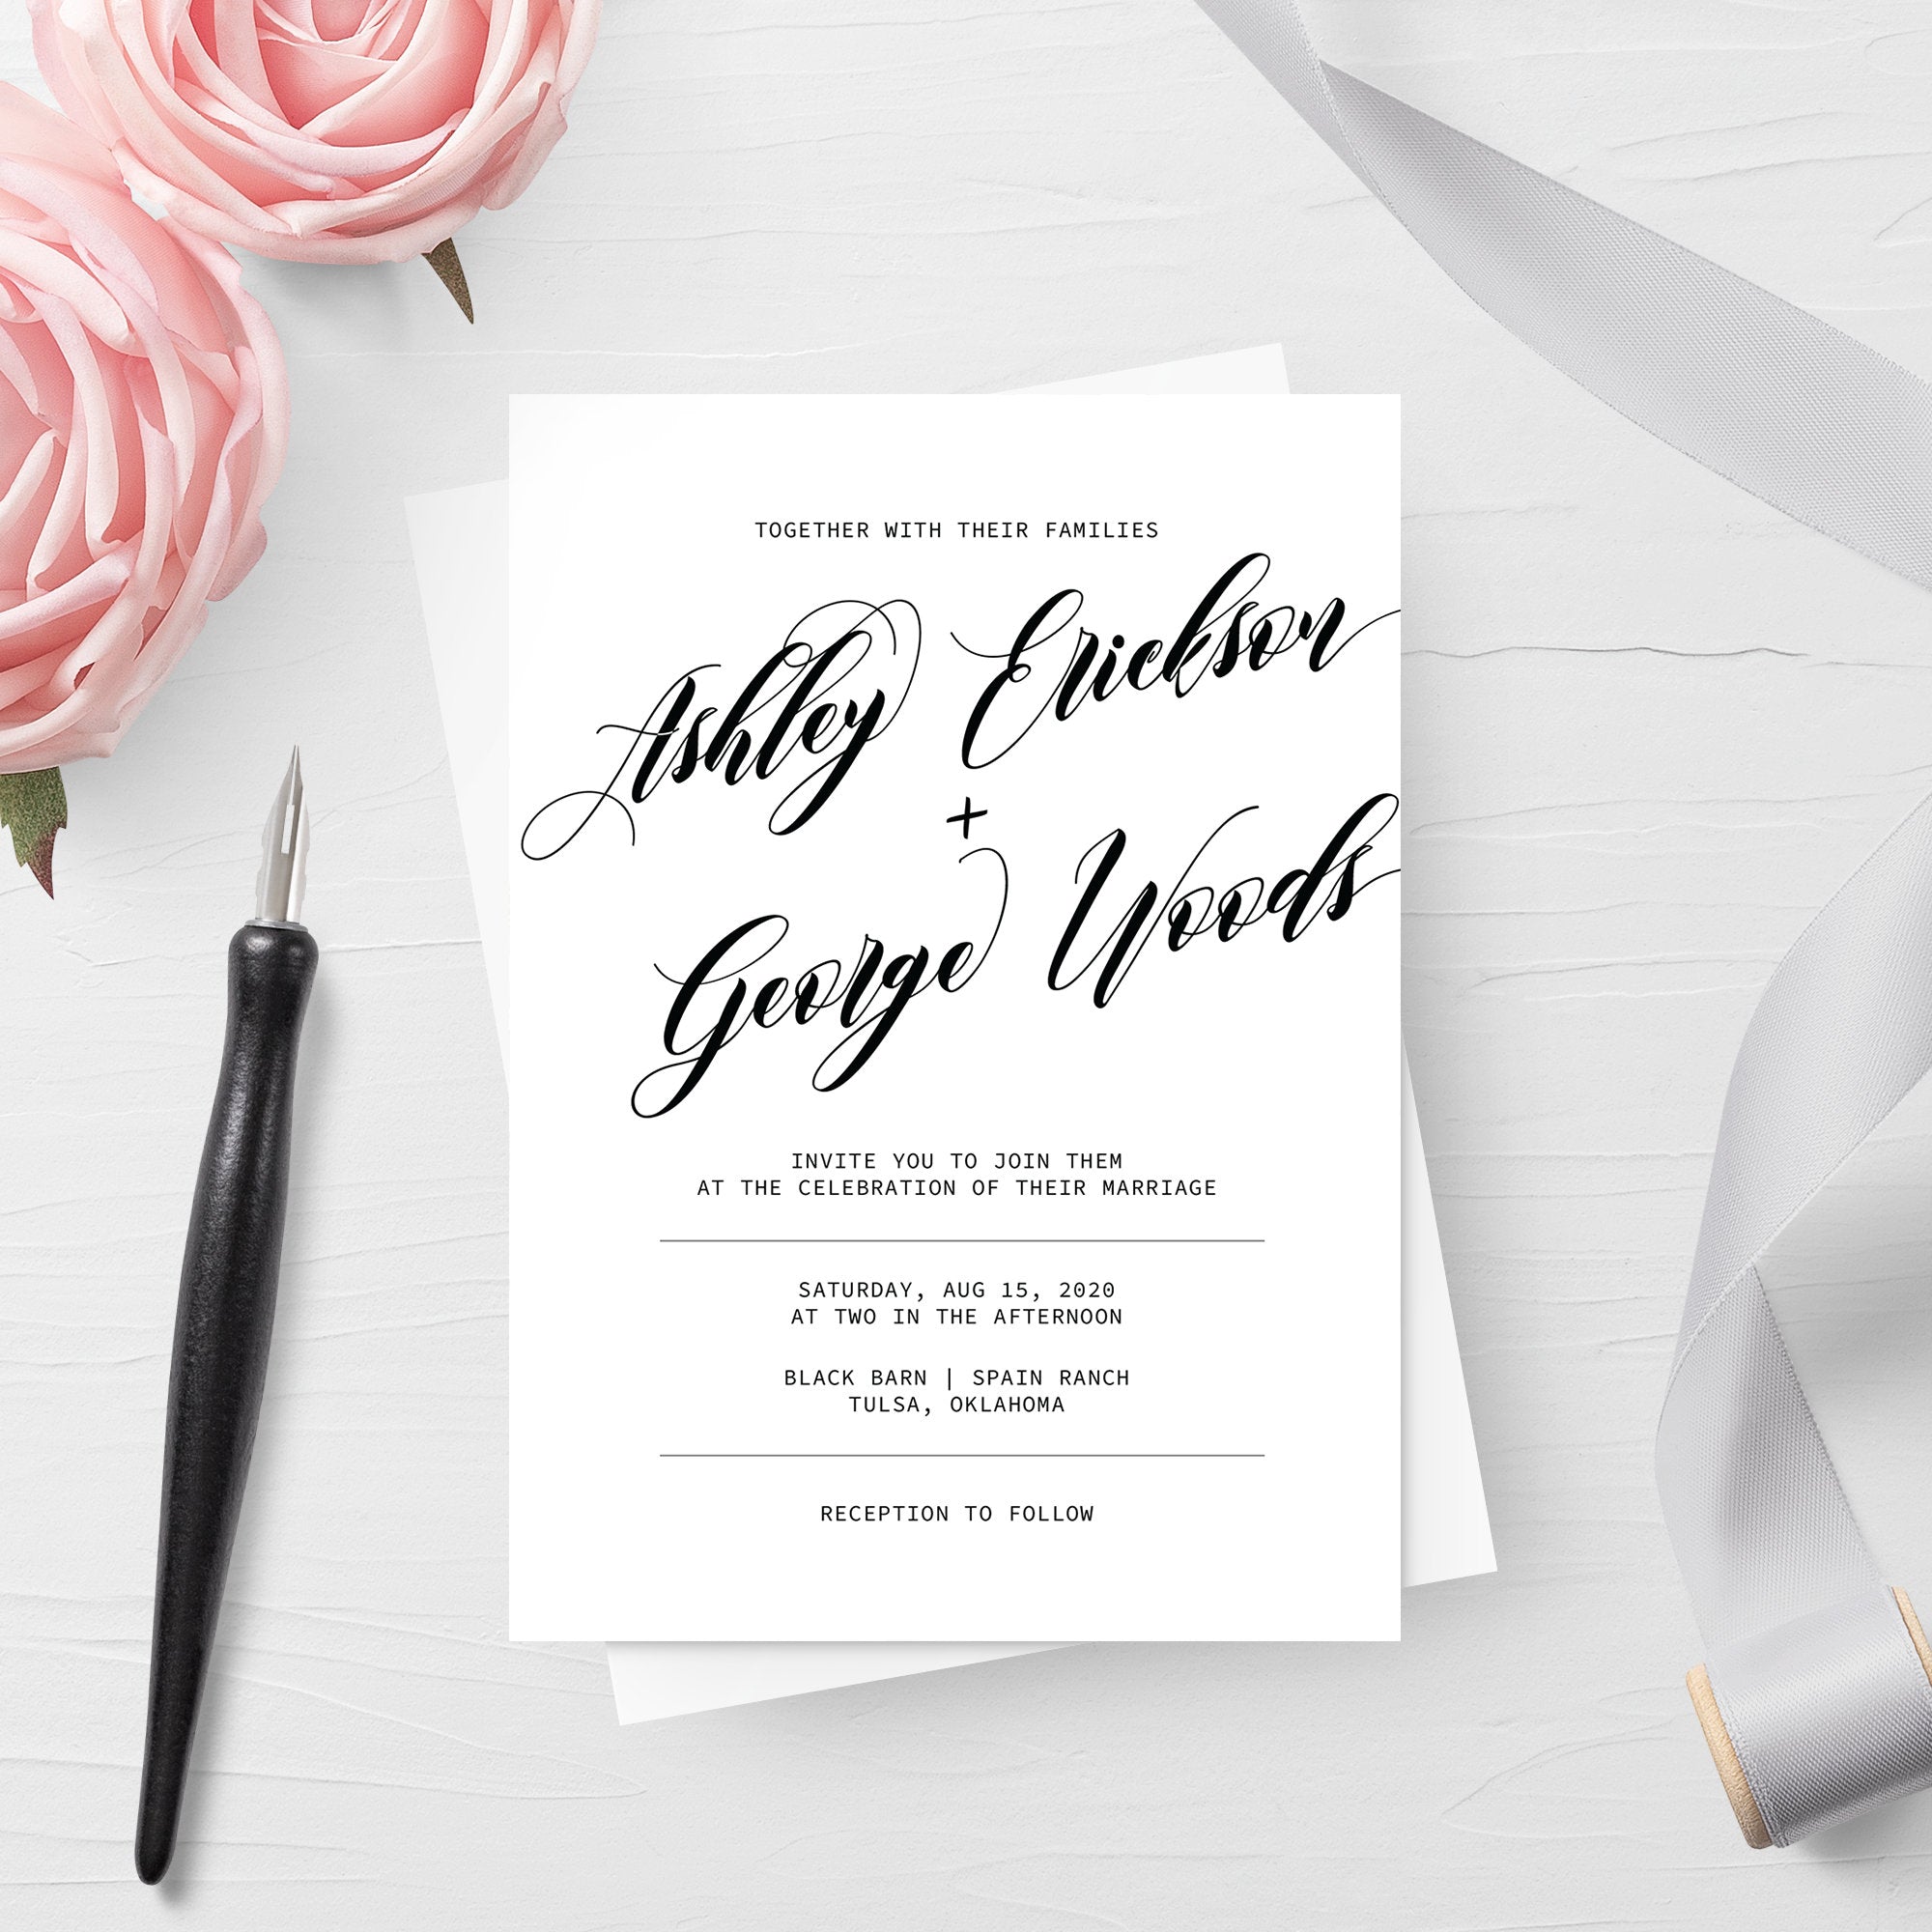 Black Script Wedding Invitation Template, Printable Wedding Invitation Suite, Editable Wedding Invitation, DIGITAL DOWNLOAD - SFB100 - @PlumPolkaDot 